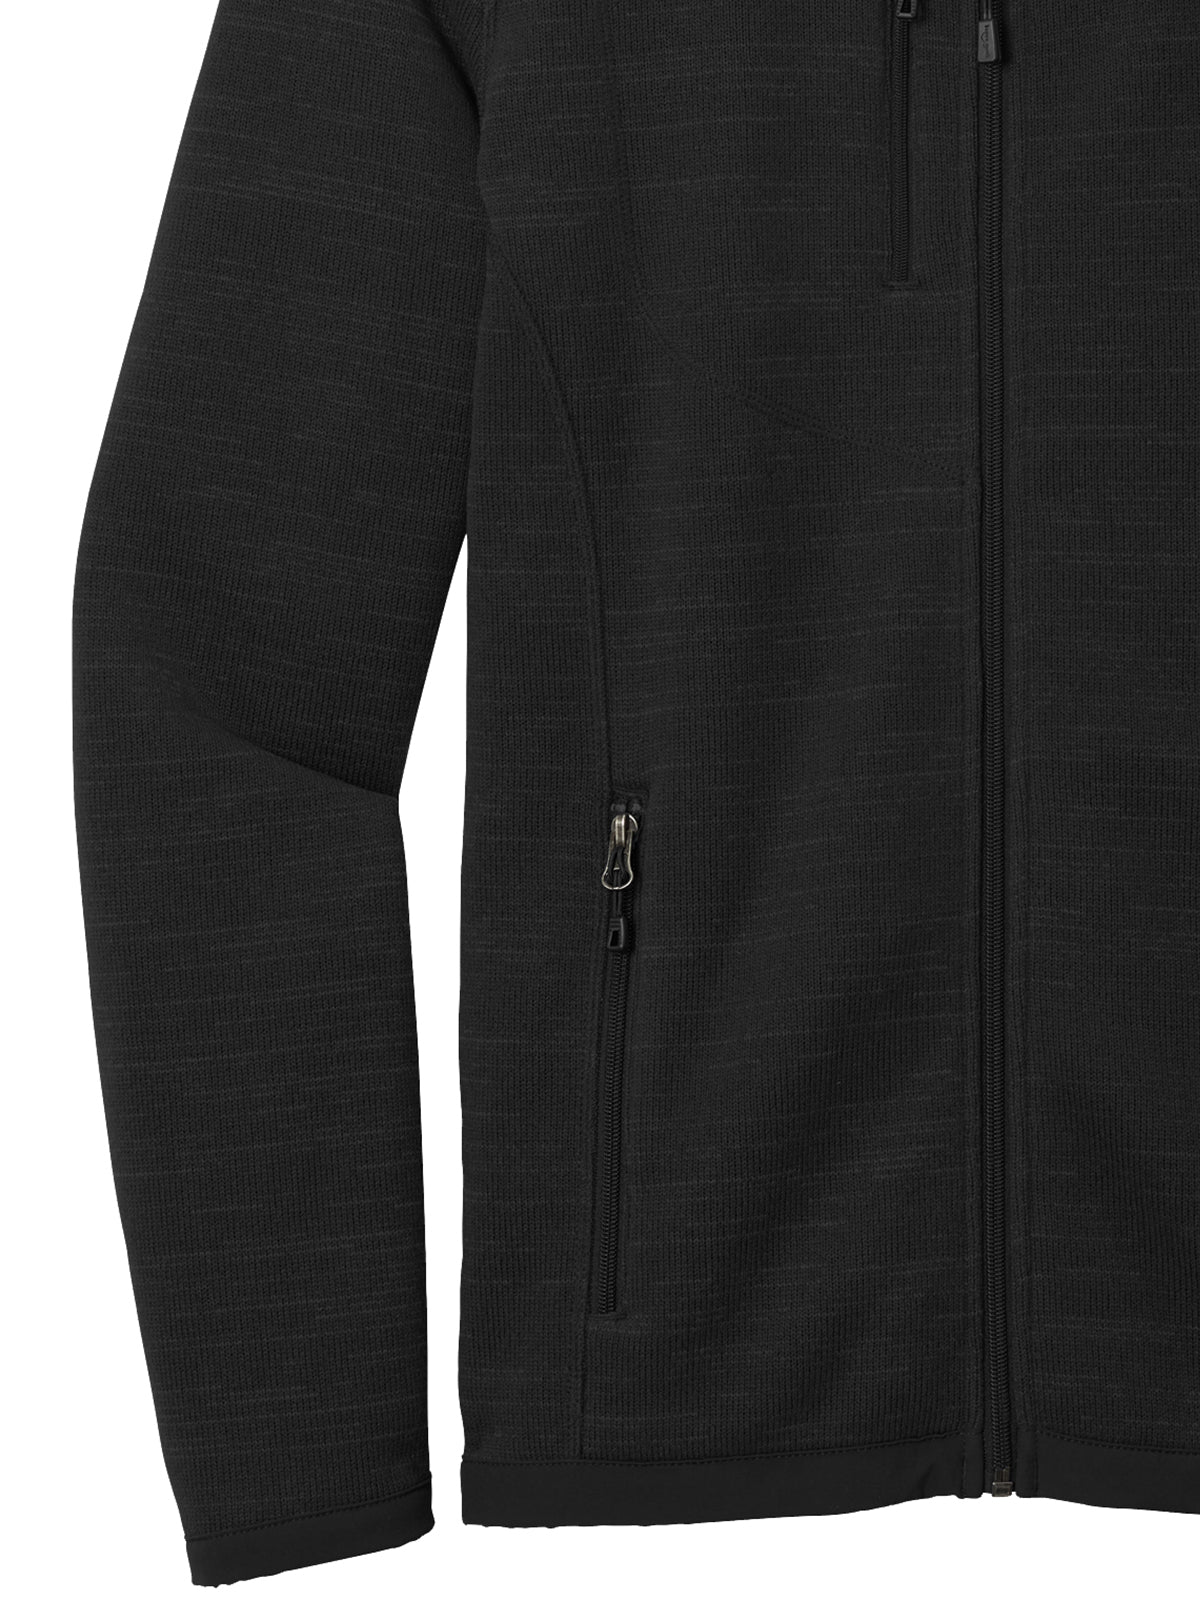 Men's Full-Zip Fleece Sweater